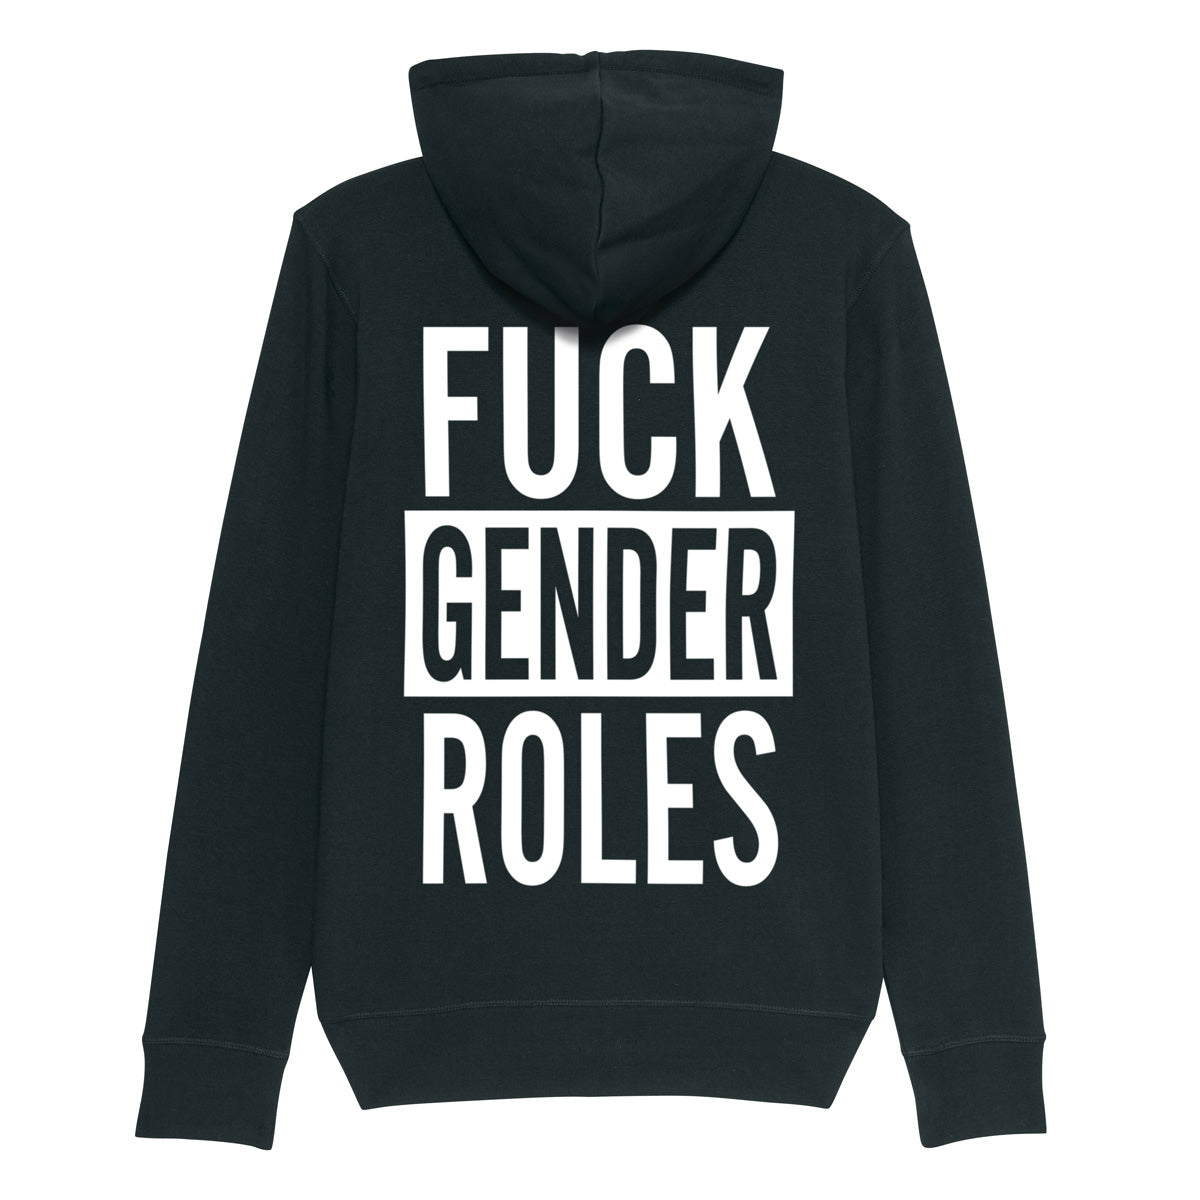 "Fuck Gender Roles" Sweatshirt